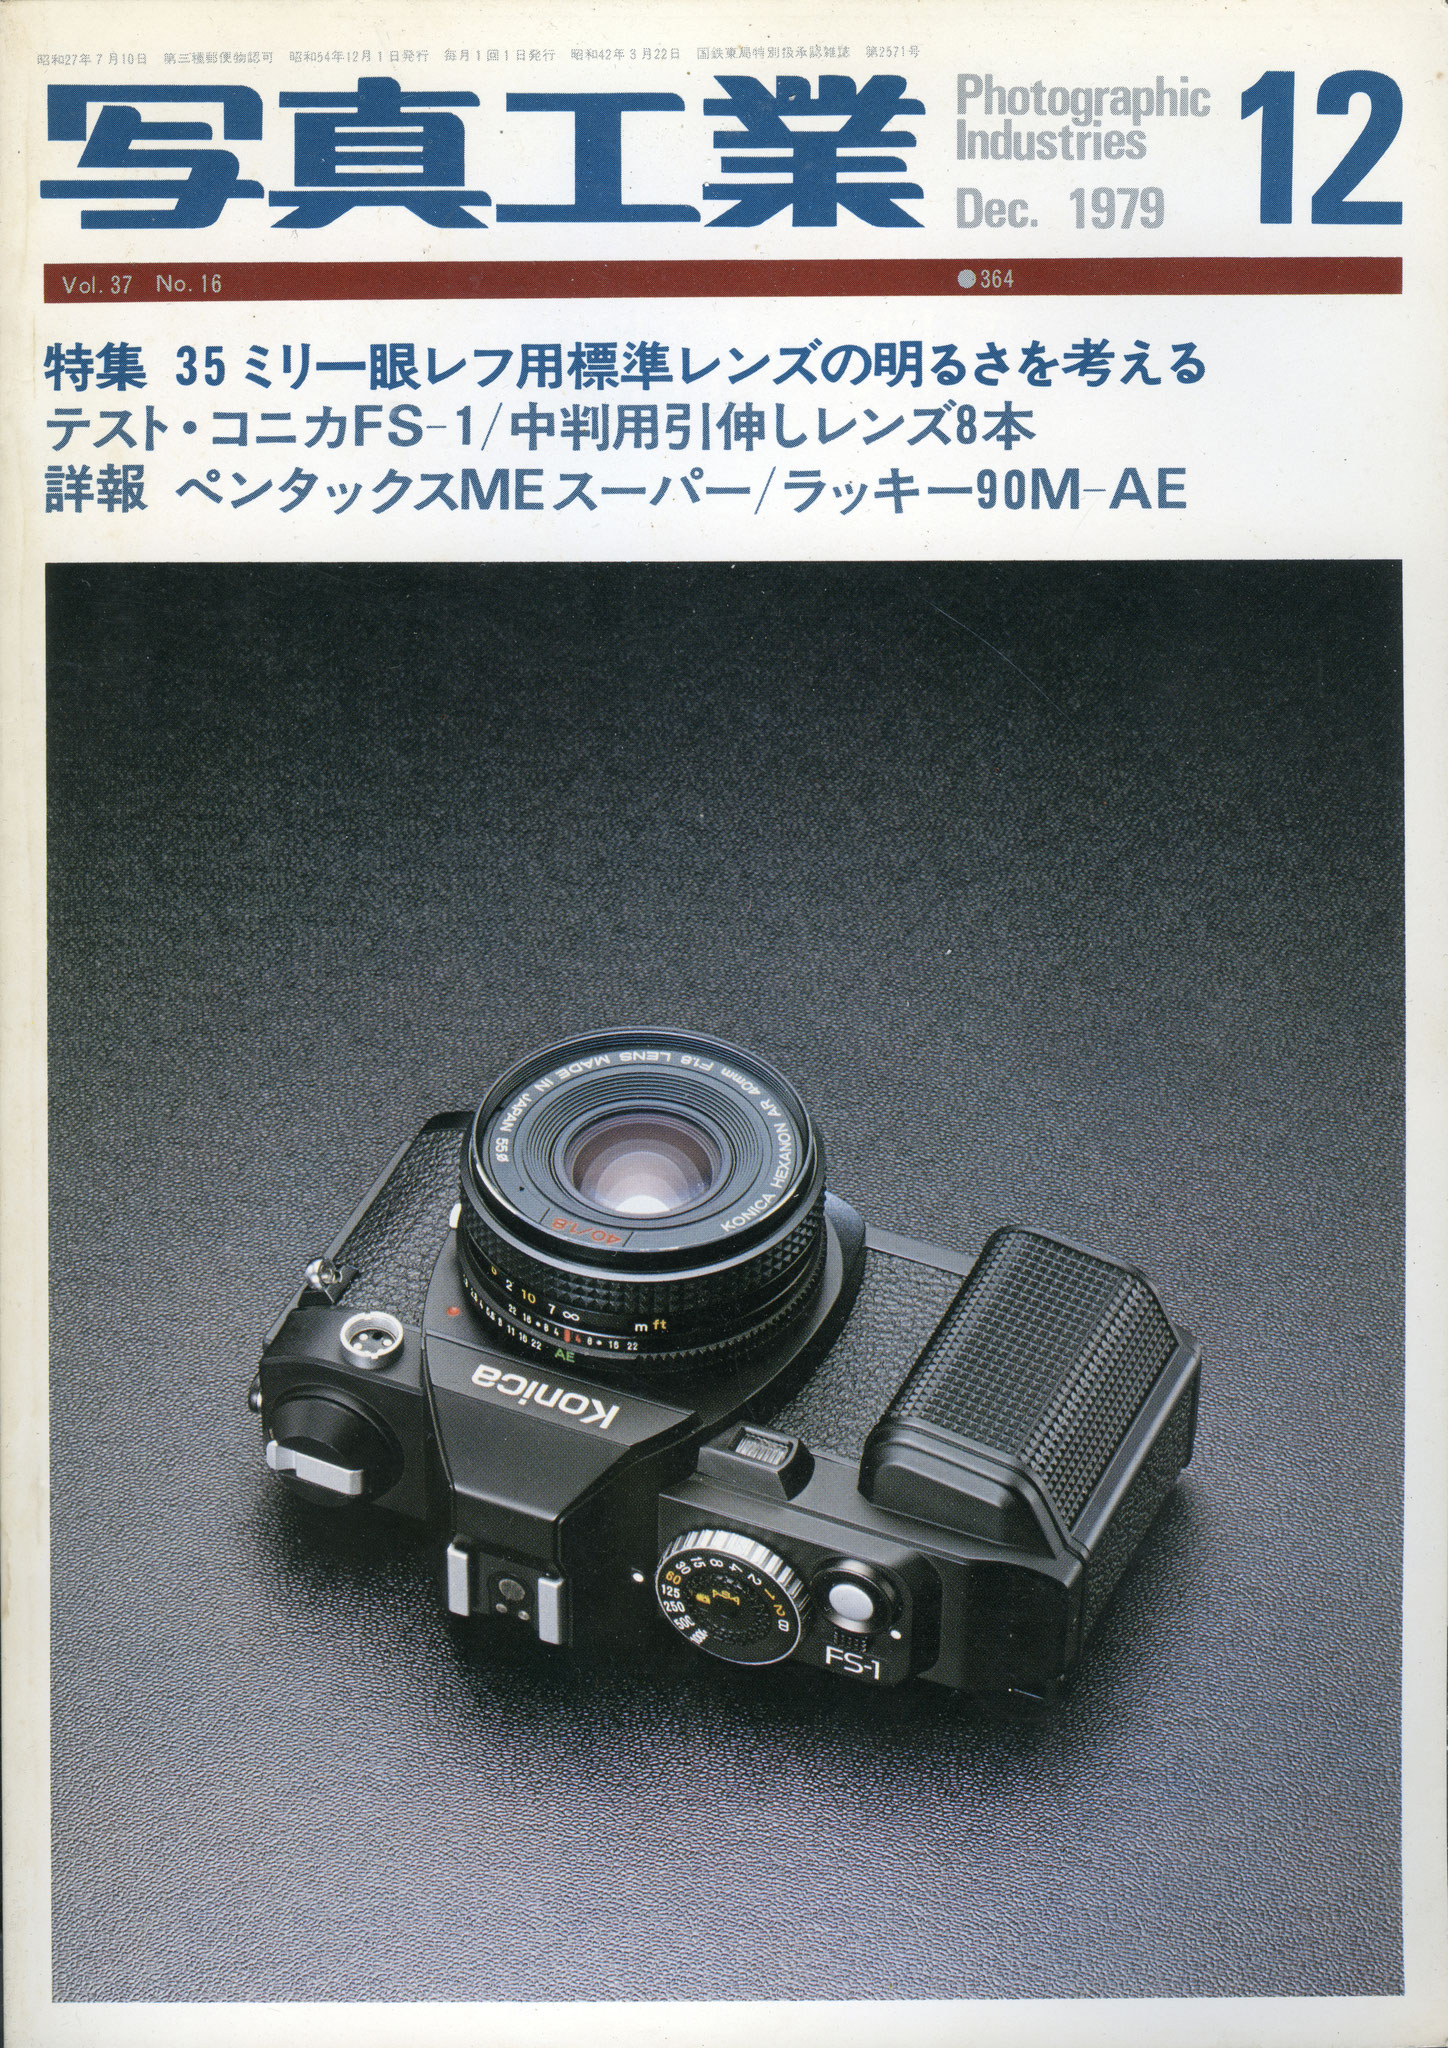 1979年12月号「写真工業」